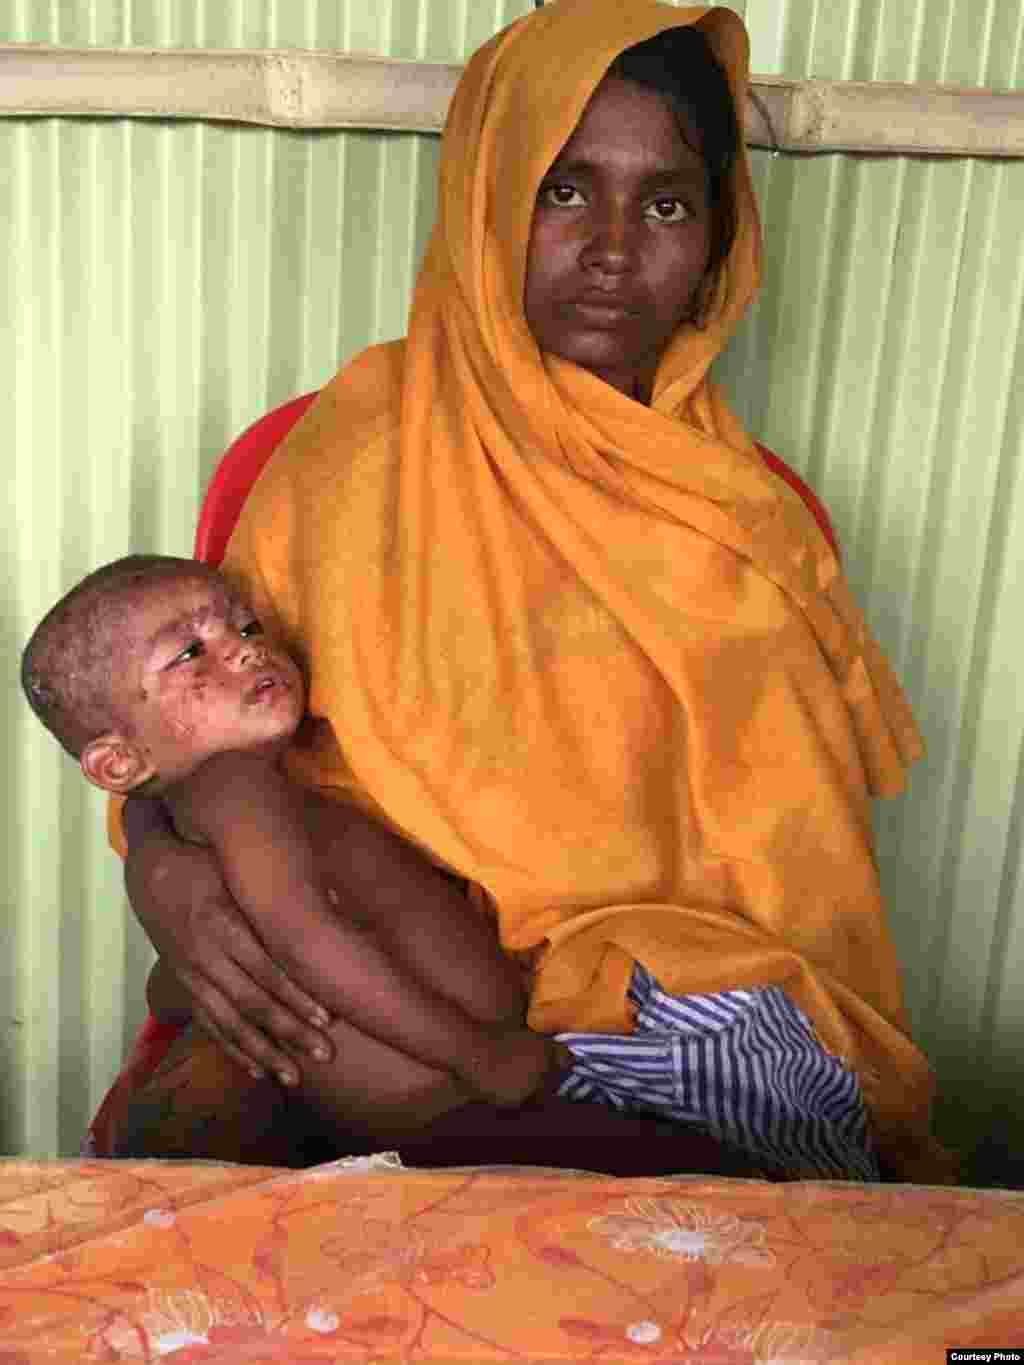 Seorang perempuan menggendong anak yang sakit di kamp pengungsi Rohingya di Bangladesh. (Foto: Dr. Imran Akbar)